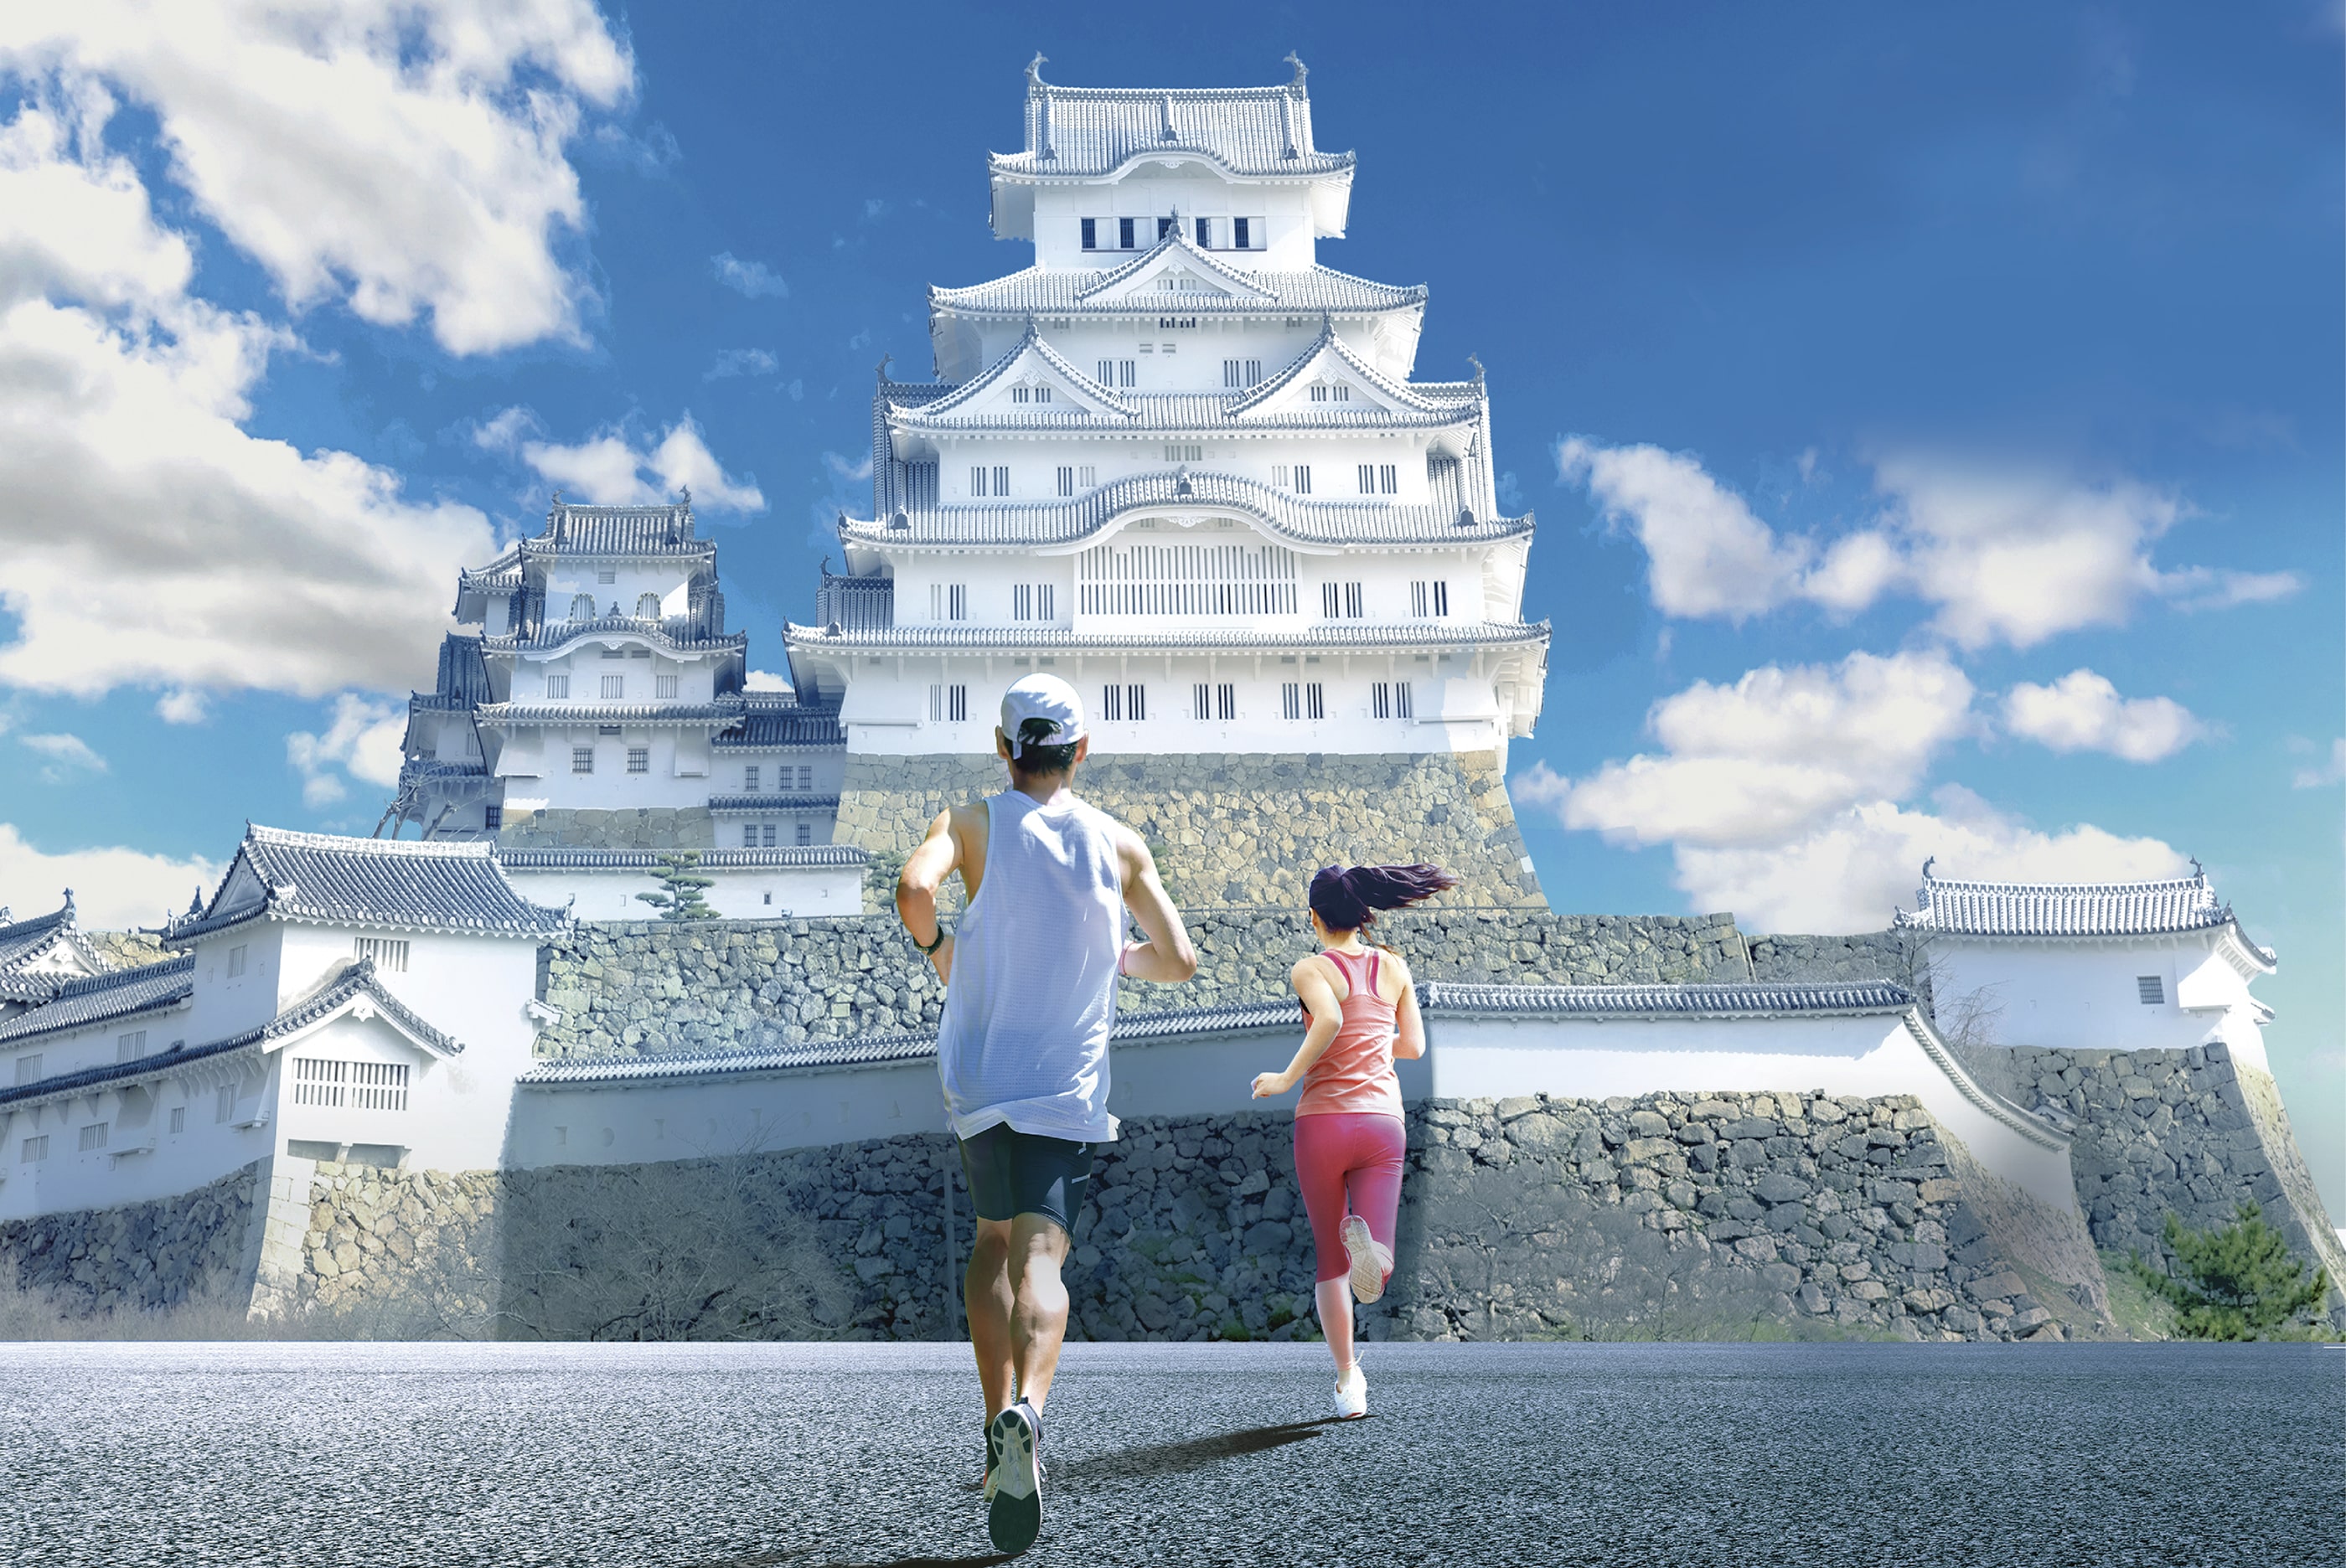 姫路城と姫路城に向かって走る男女のランナーの後ろ姿